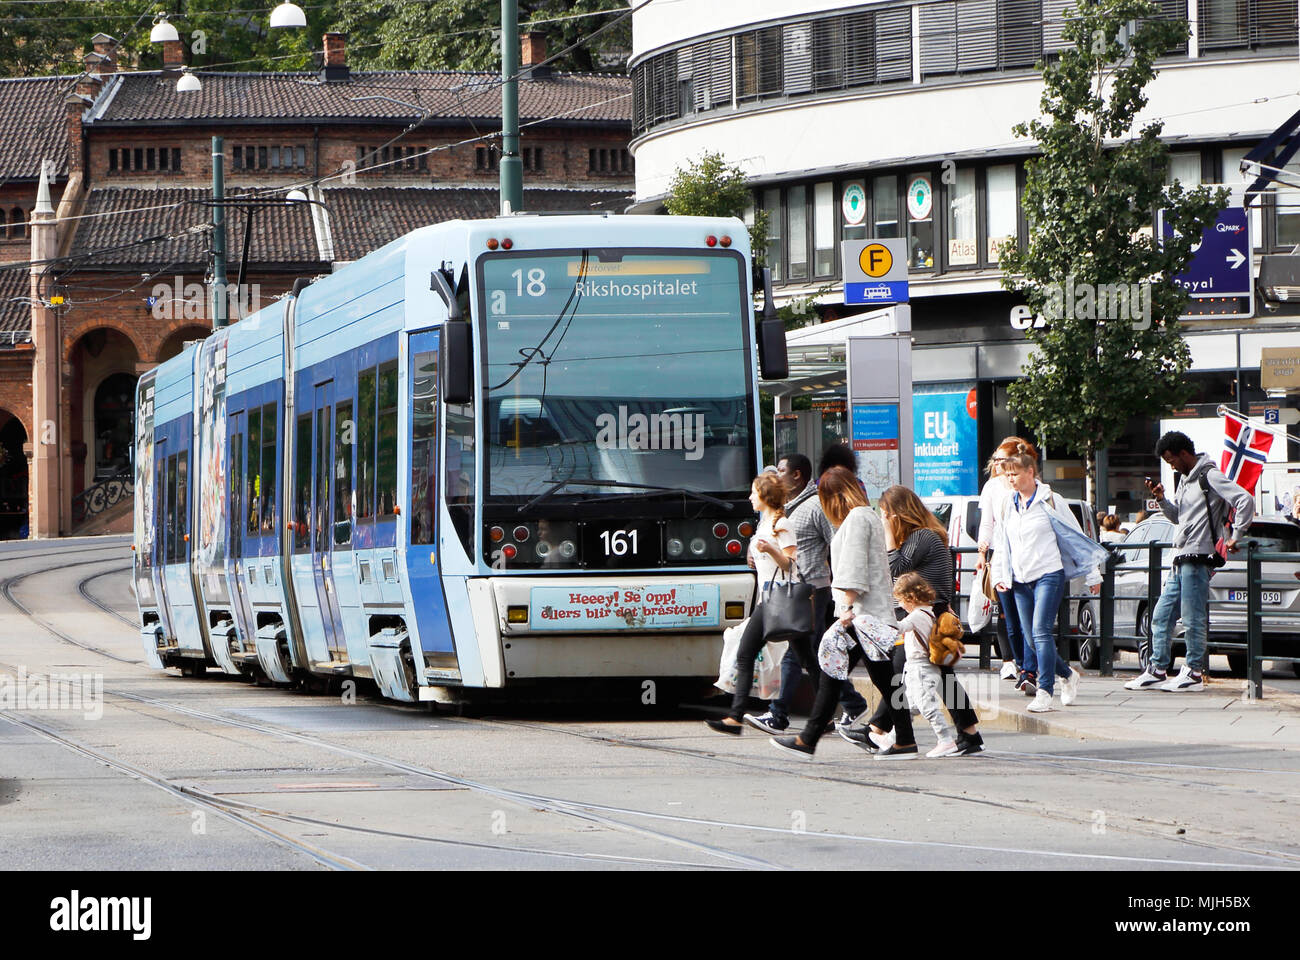 Oslo, Norwegen - 16. September 2016: Eine blaue artikuliert Straßenbahn der Klasse SL 95 im Dienst auf der Linie 18 an der Haltestelle auf der Straße Biskop Gunnersen Tor nach unten Stockfoto